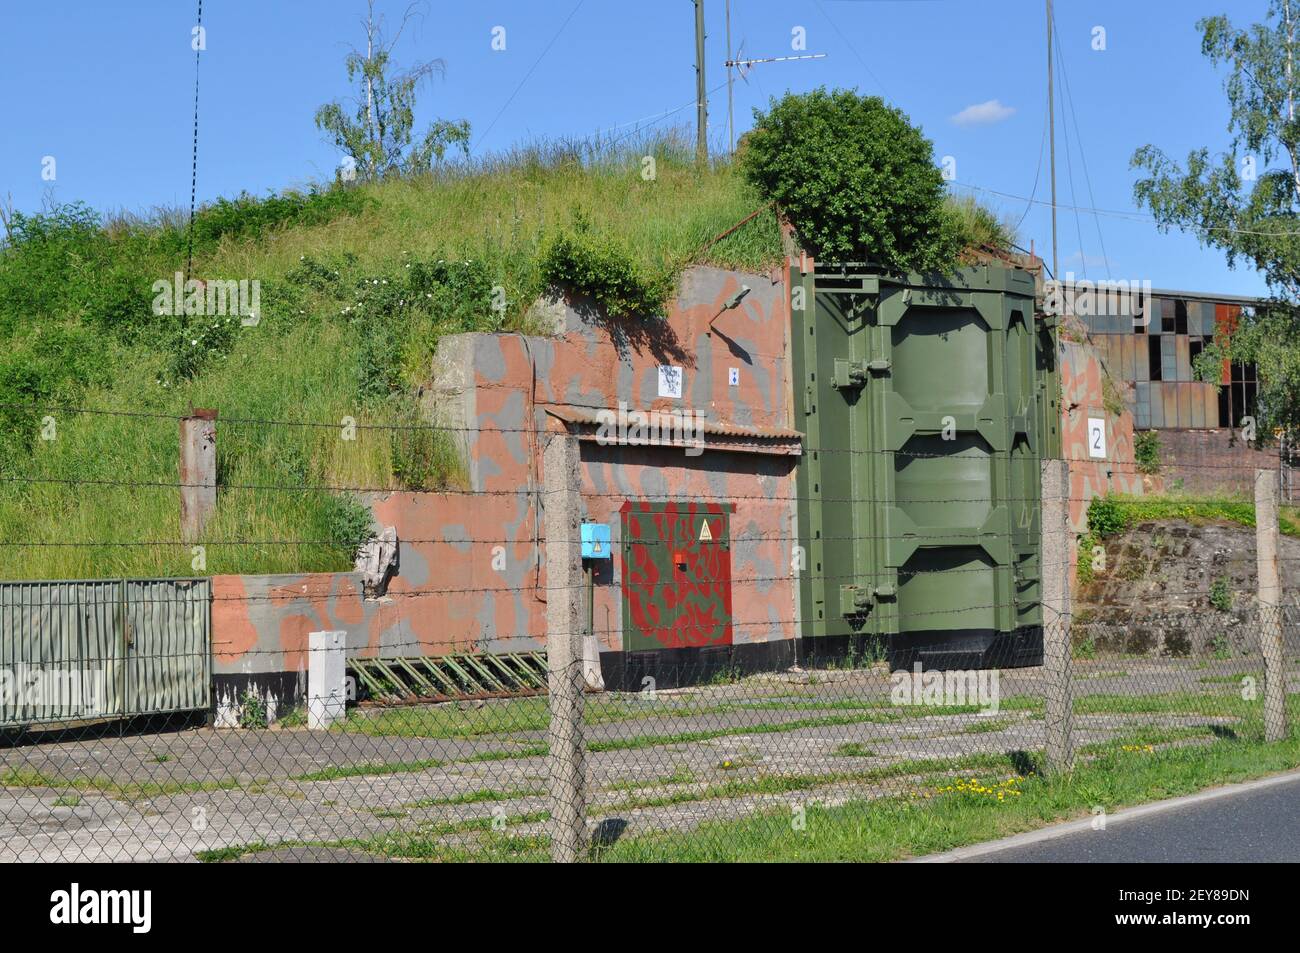 ehemalige Sonderwaffenlager (Bunker Granit Typ 1) für atomare Kernwaffen (Atombombe) auf dem Flugplatz Großenhain am 6.6.2016 Stock Photo